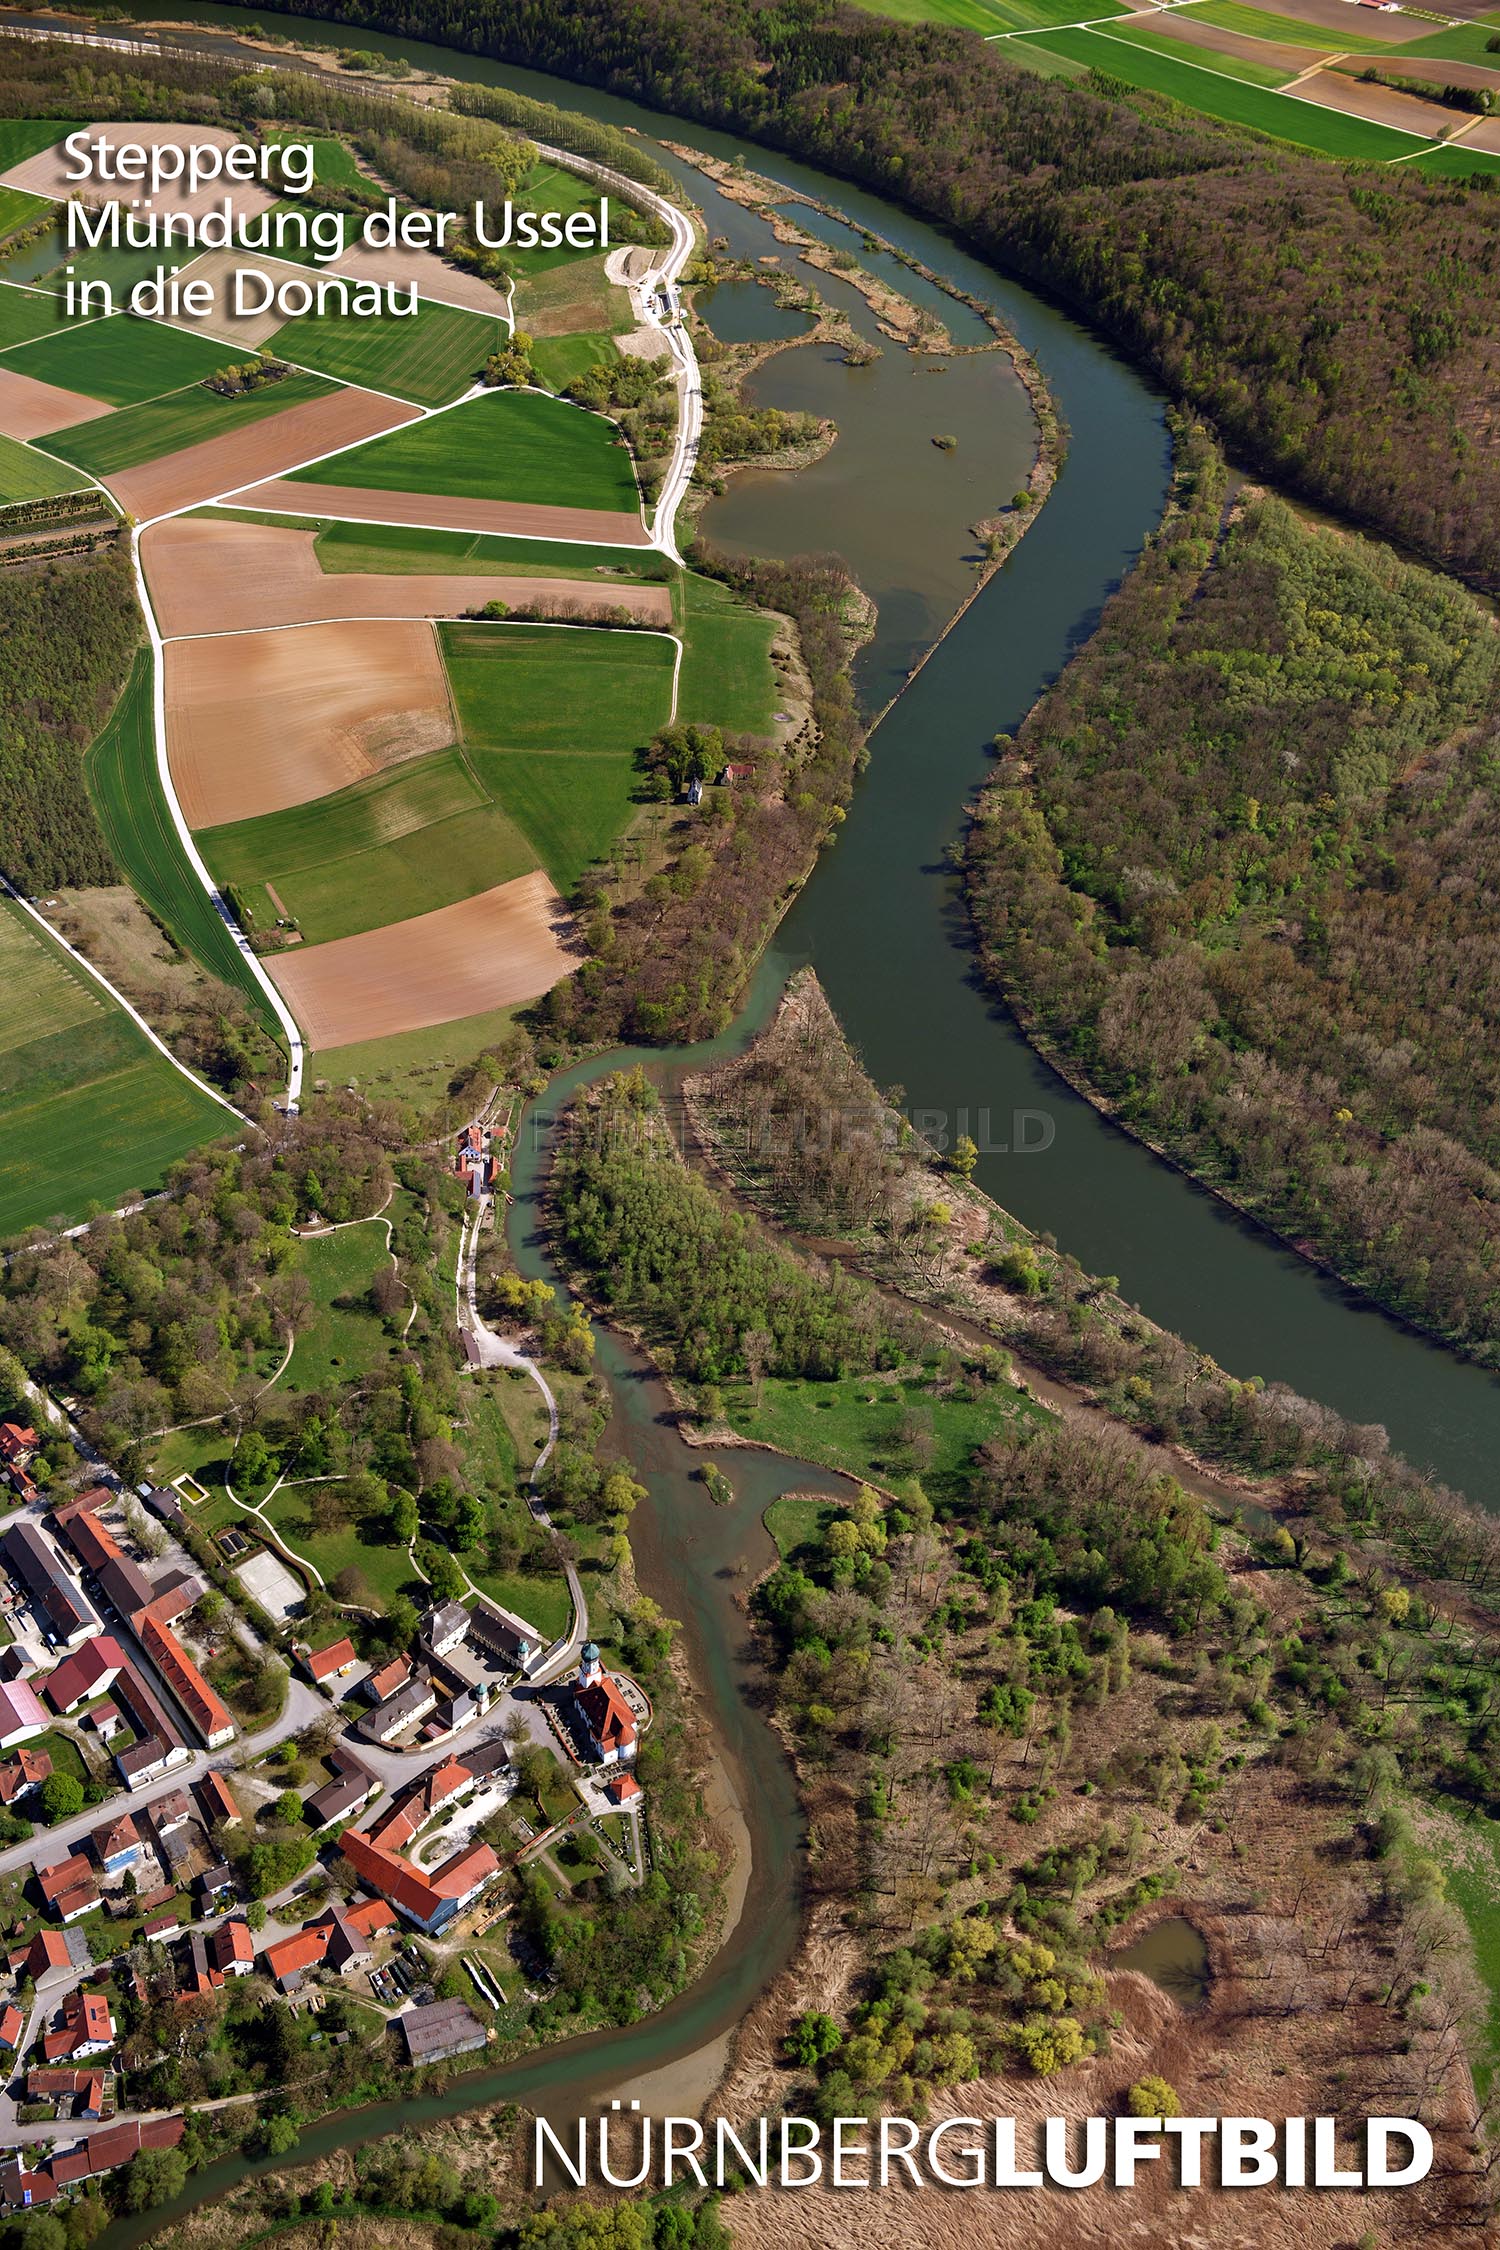 Stepperg, Mündung der Ussel in die Donau